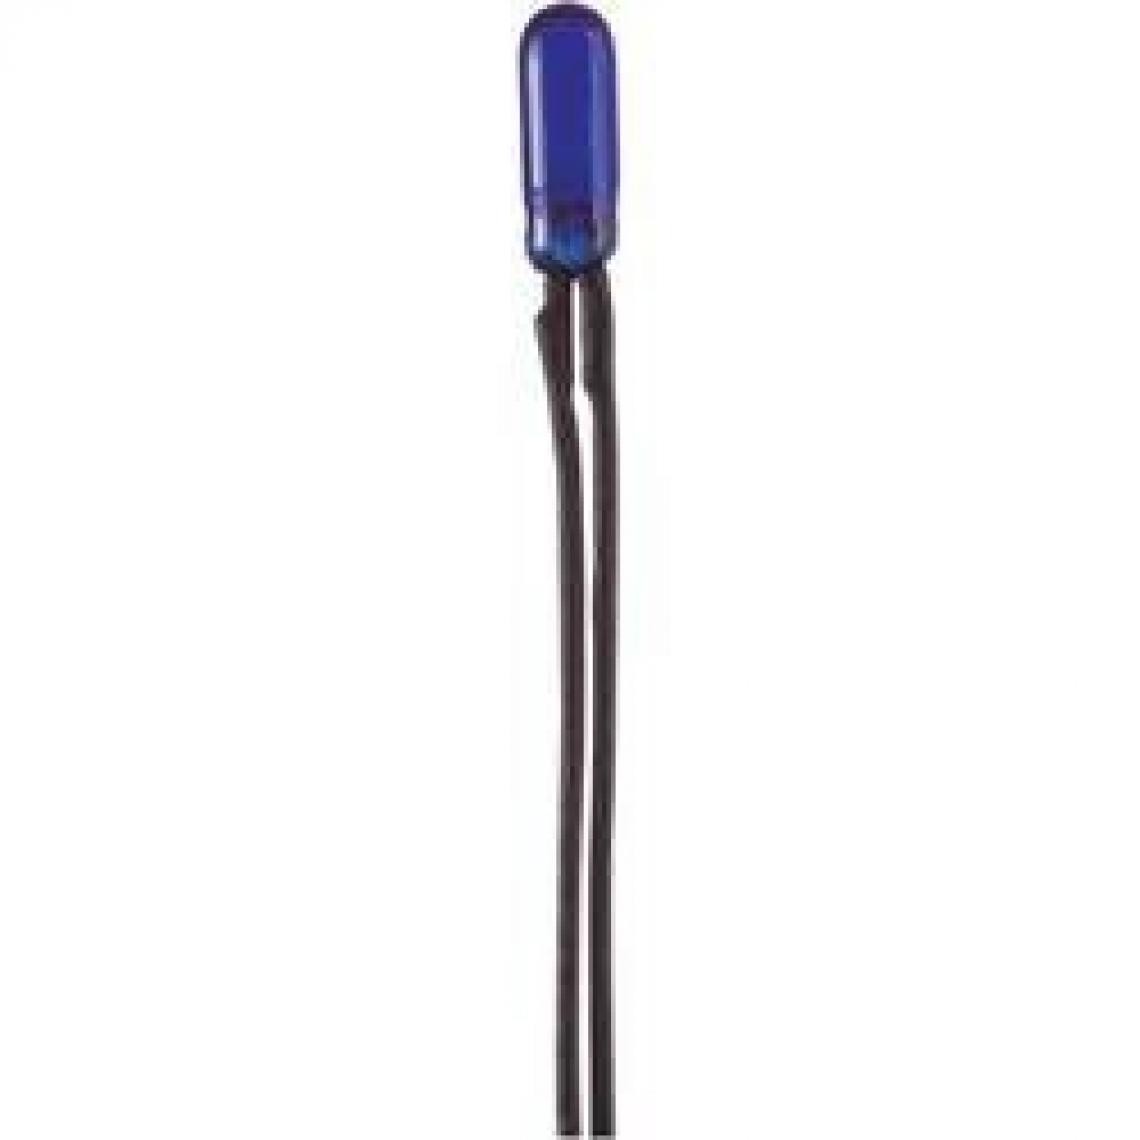 Inconnu - Ampoule spéciale 2110165B bleu 16 V 30 mA 1 set - Accessoires et pièces